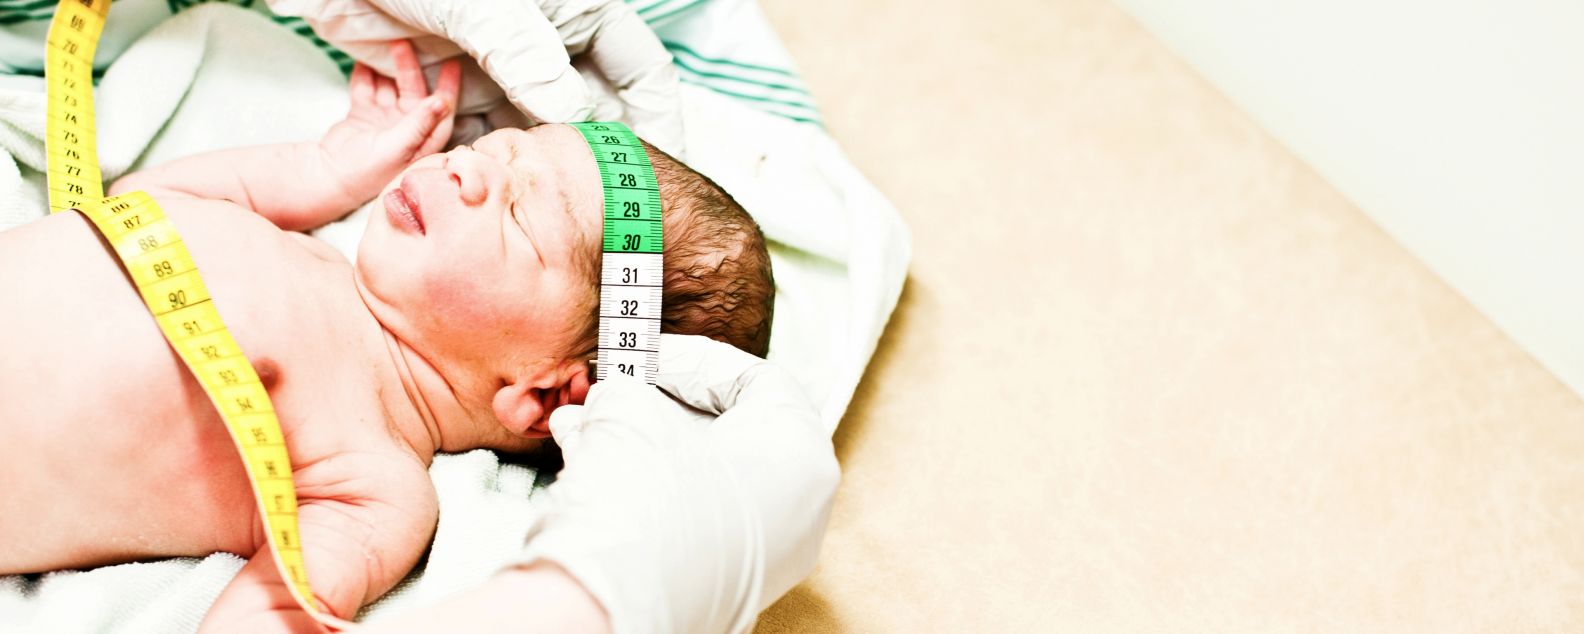 Bebê recém-nascido passando por um primeiro exame físico